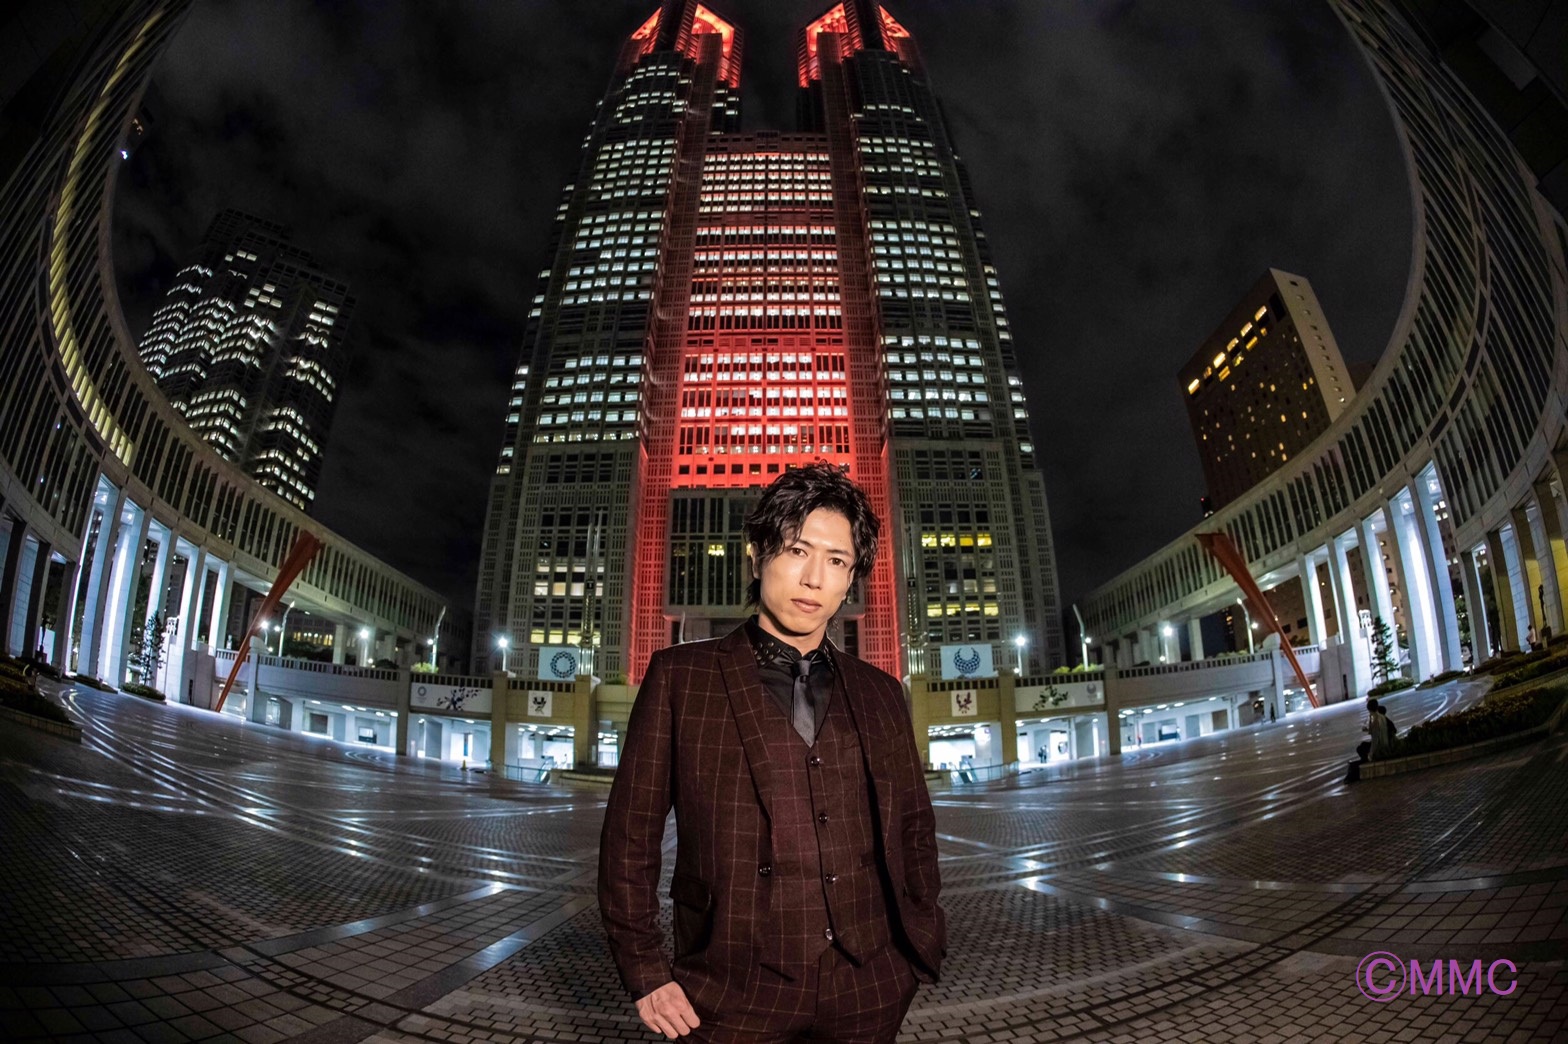 横尾瑠尉、2020年カレンダー発売決定　大阪・東京2都市のHMVでイベント開催 イメージ画像